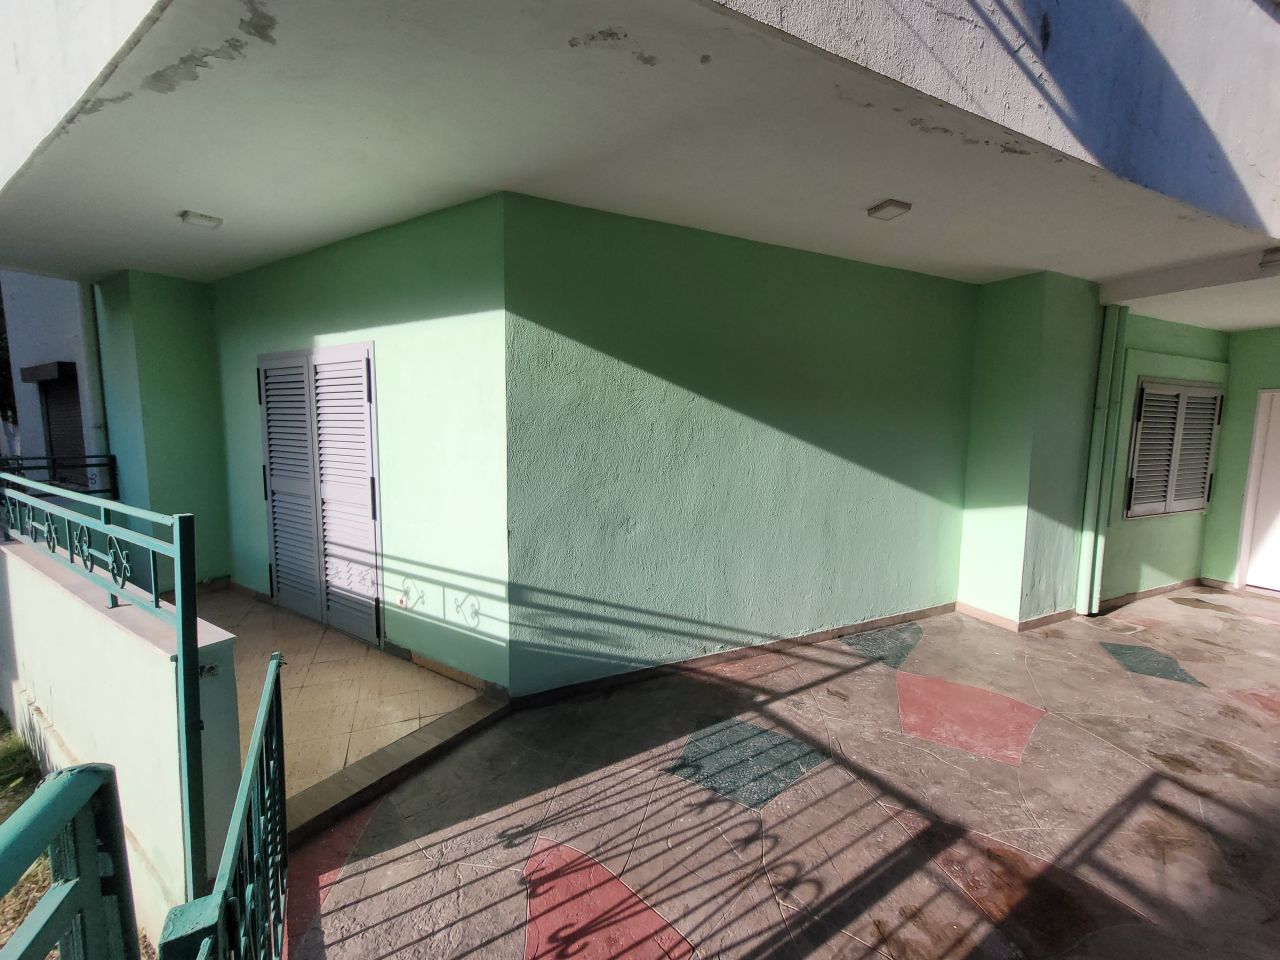 Eladó Három Hálószobás Lakás Golem Durresben Albániában 5 Percre A Tengertől